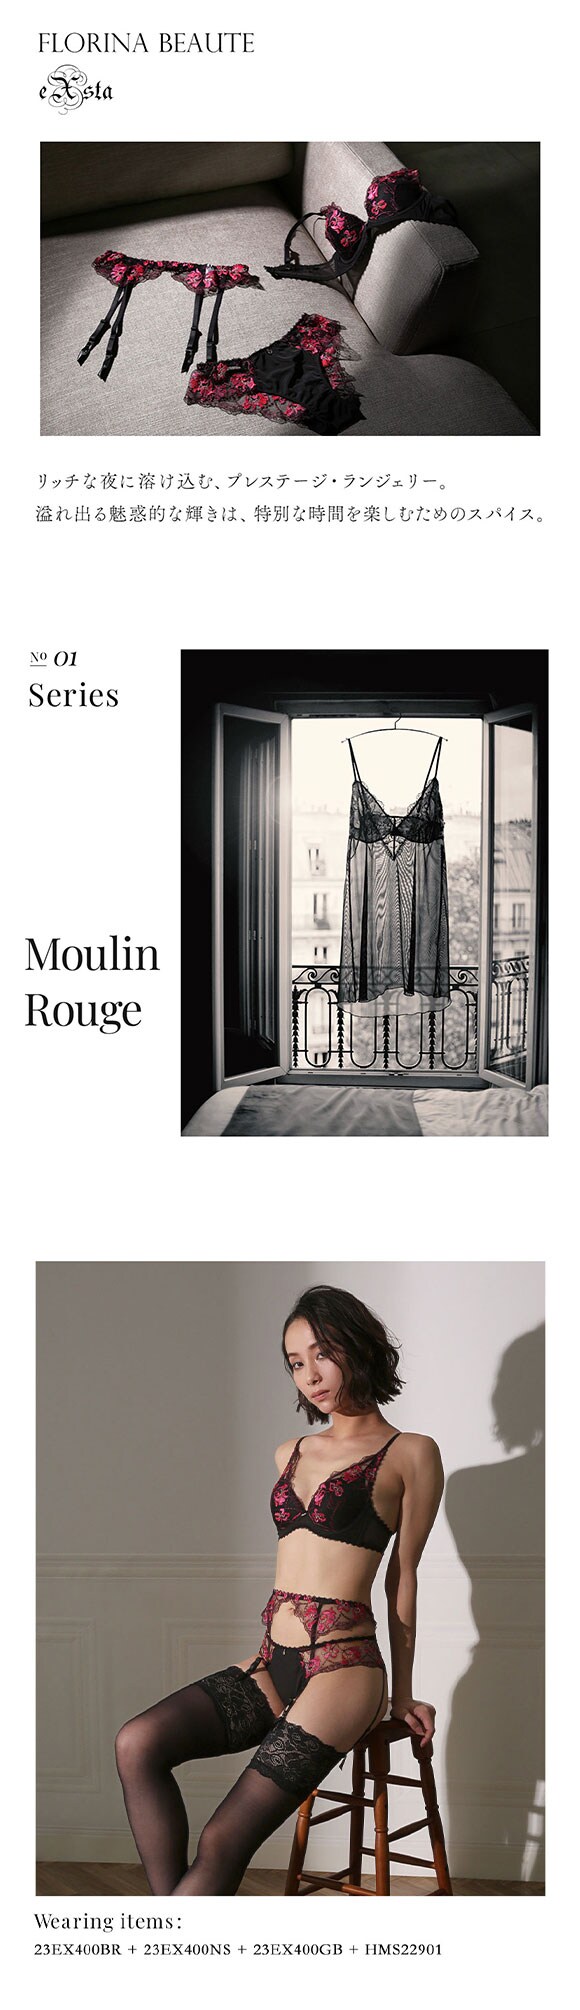 フロリナヴォーテ Moulin Rouge ガーターベルト ランジェリー ML 単品 FLORINA BEAUTE eXsta ムランルージュ